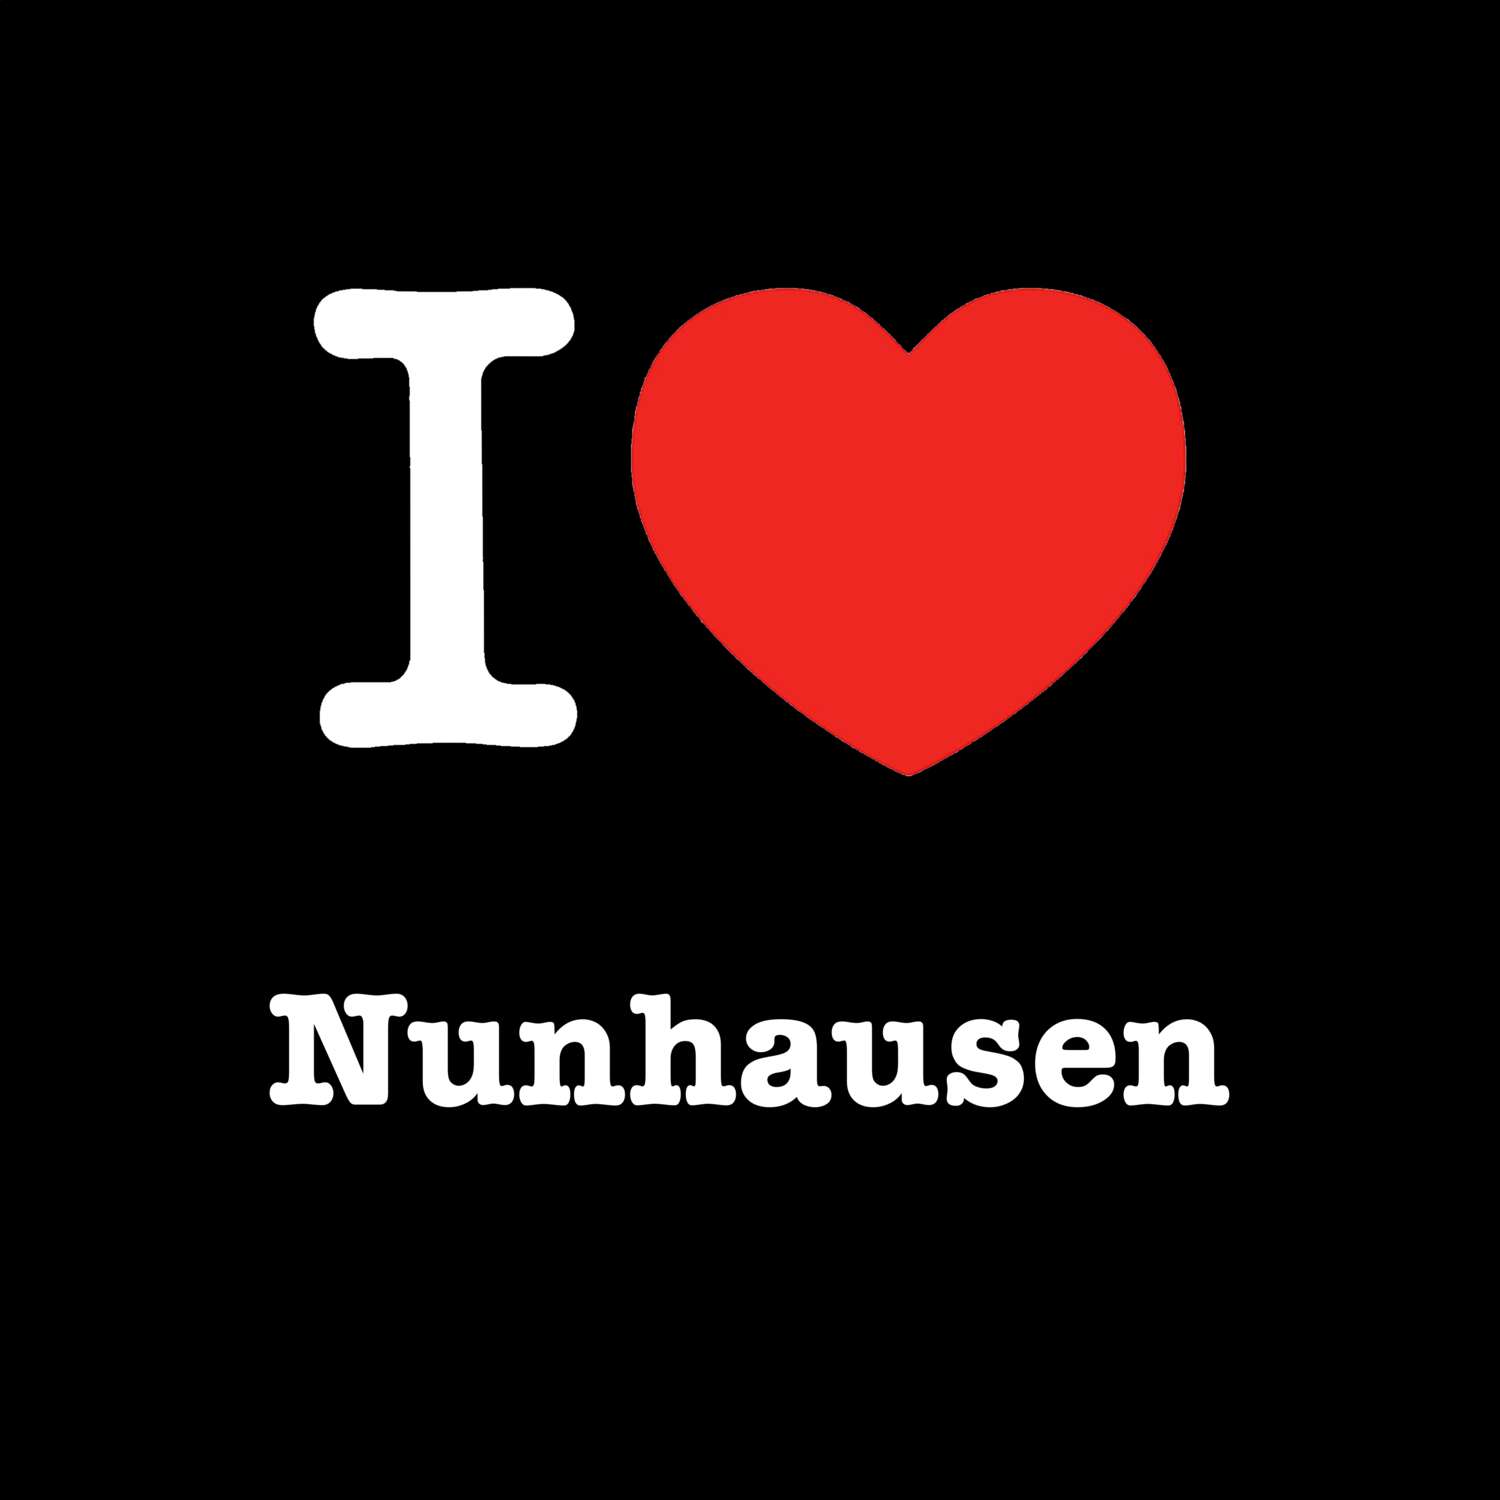 Nunhausen T-Shirt »I love«